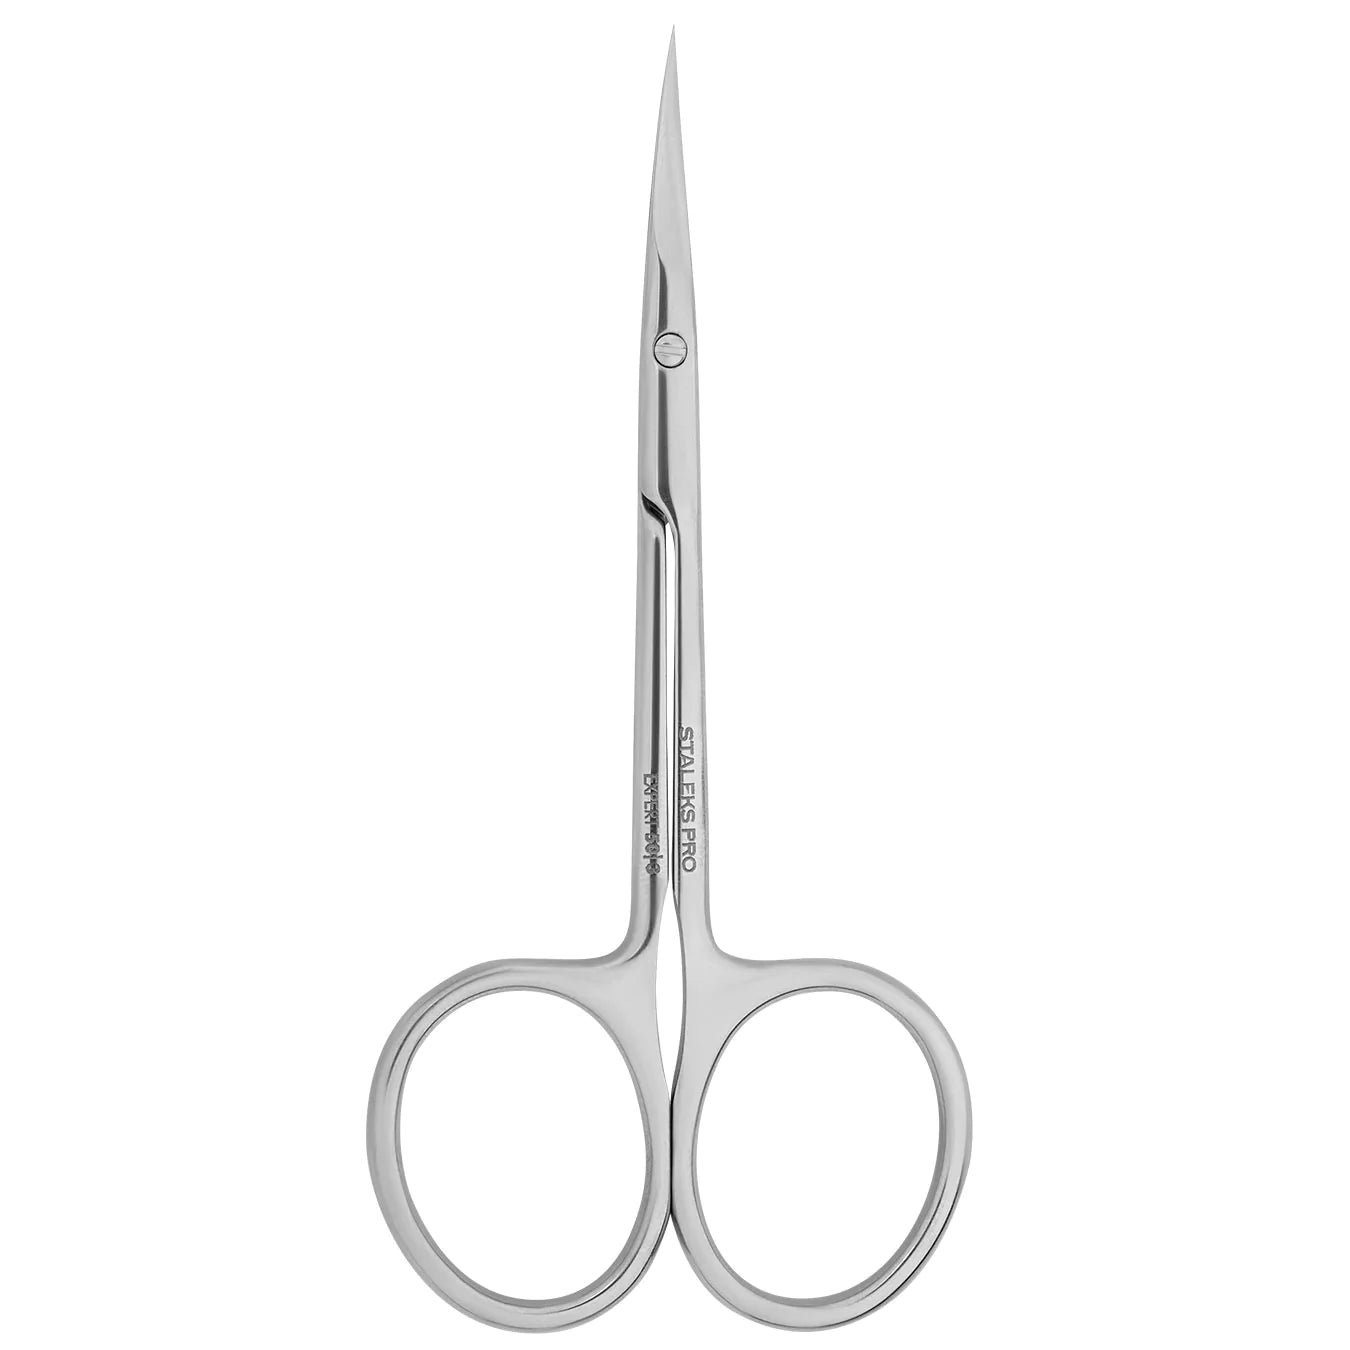 Professional cuticle scissors EXPERT 50 TYPE 3 -SE-50/3